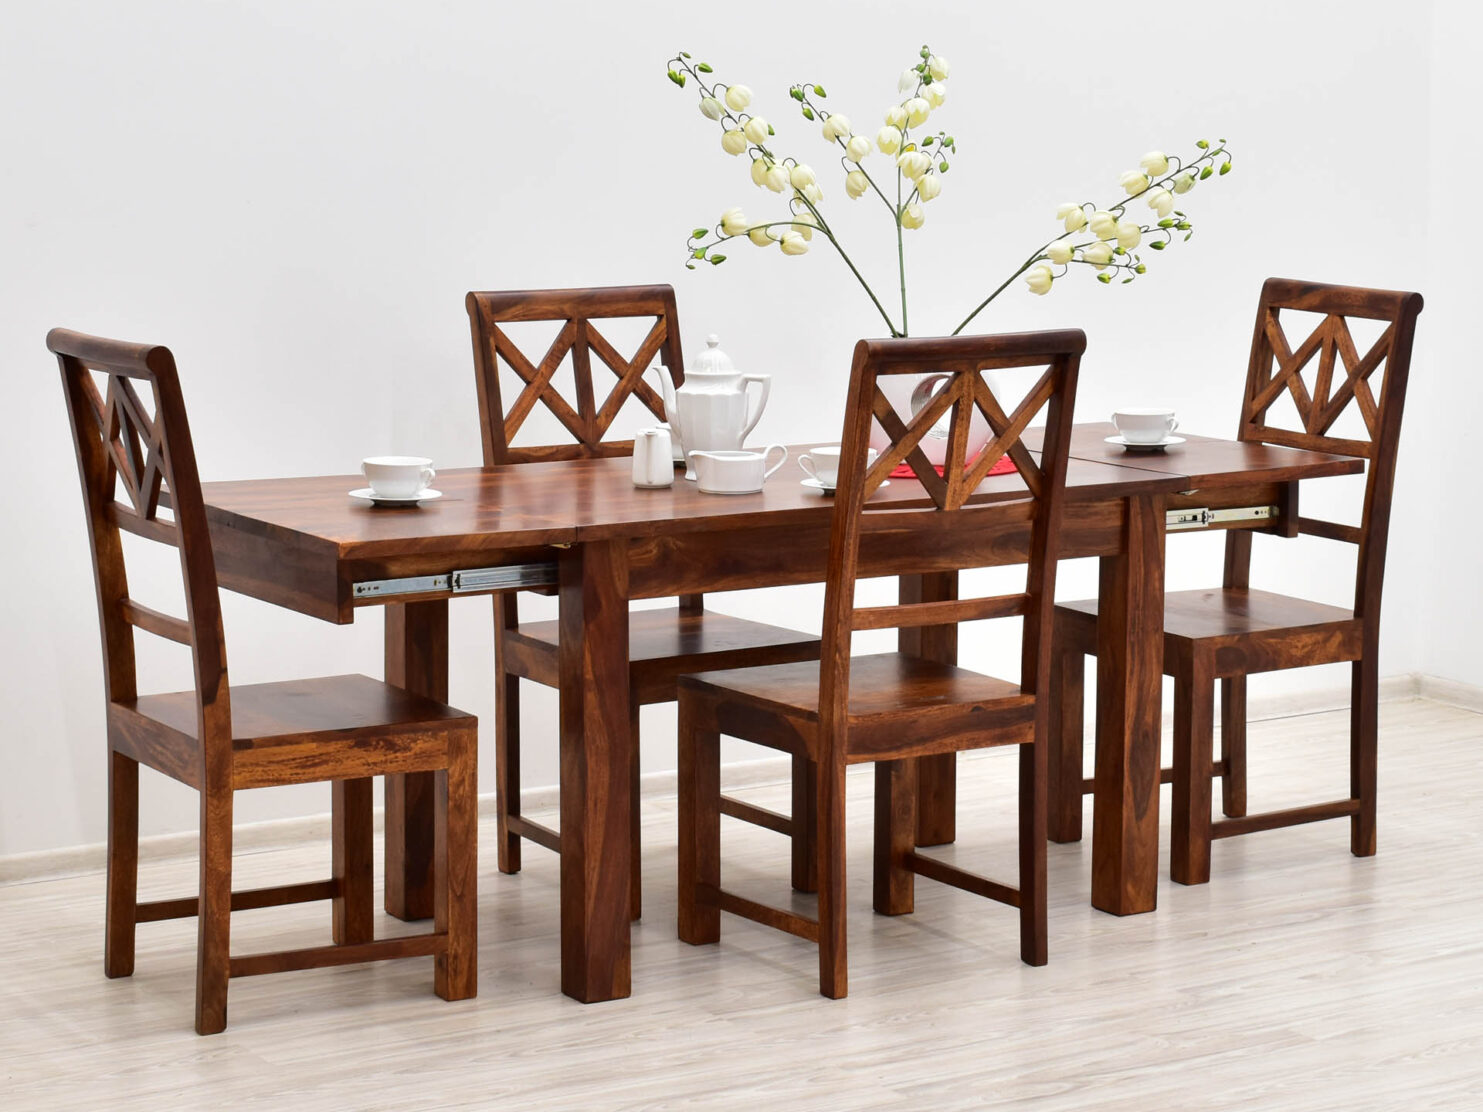 komplet-obiadowy-kolonialny-stol-rozkladany-4-krzesla-azurowe-oparcia-lite-drewno-palisander-cieply-braz